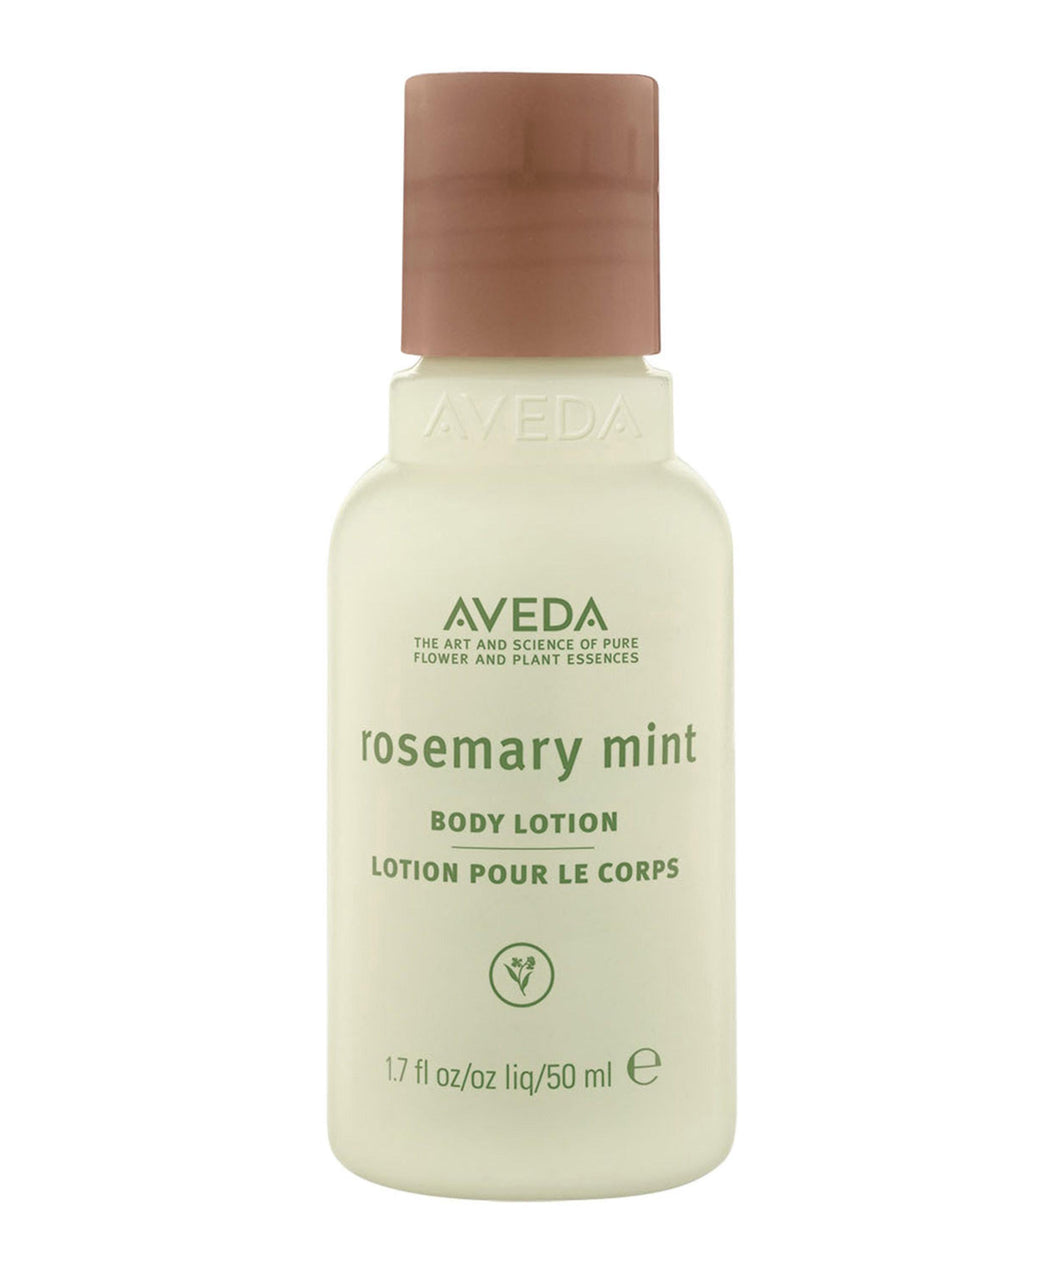 rosemary mint body lotion